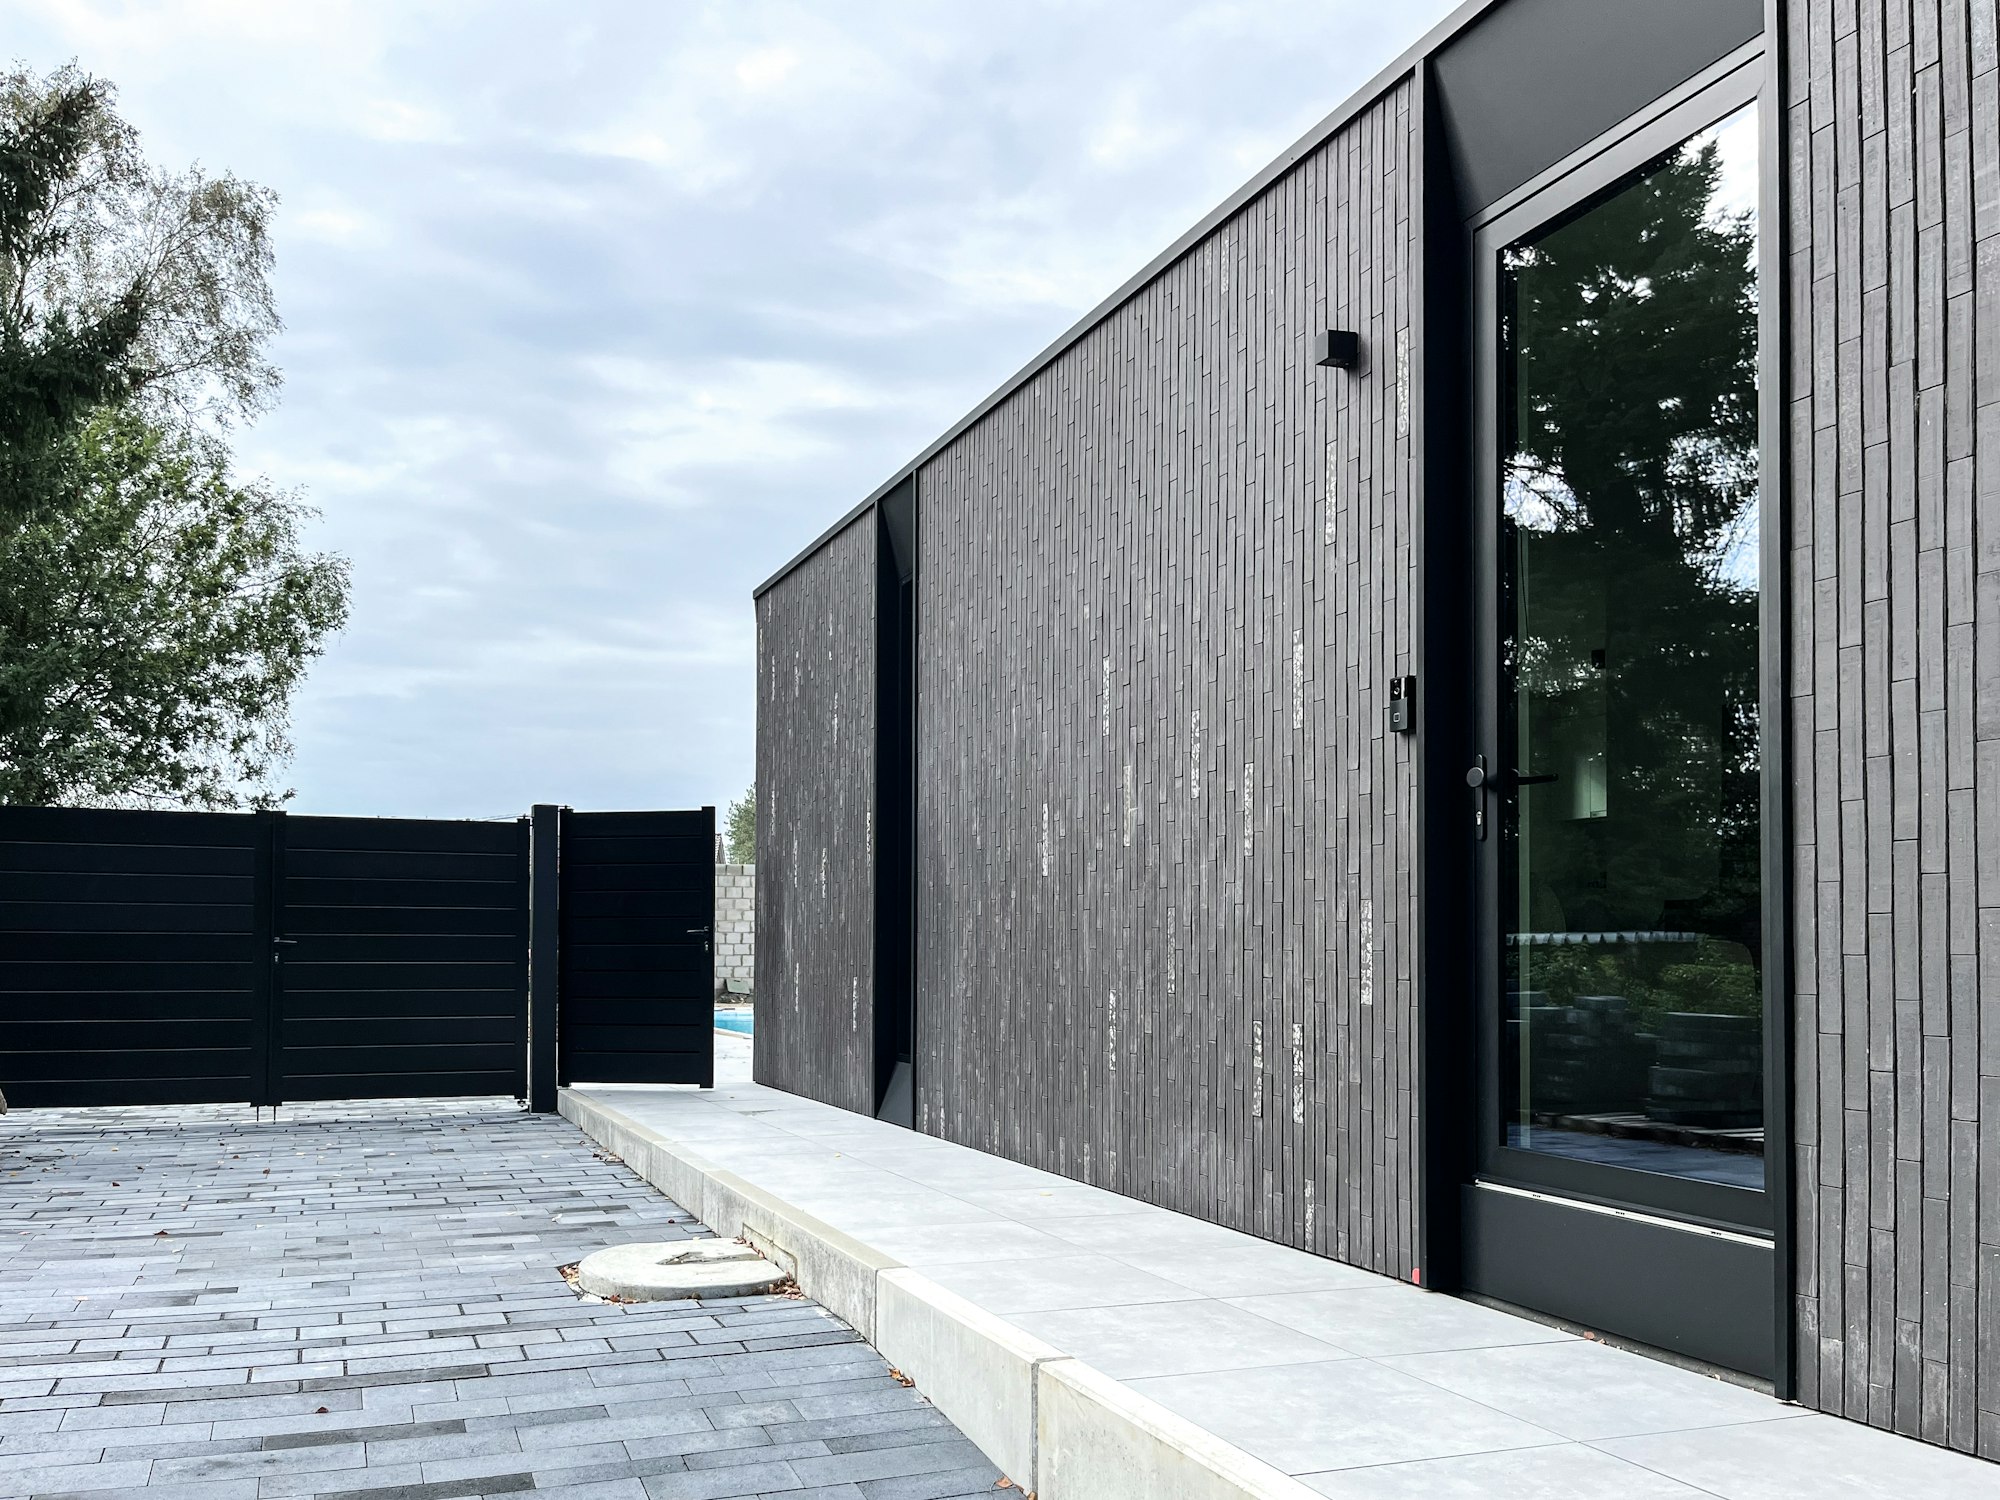 Skilpod #100 — houtskeletbouw bungalow woning met 2 slaapkamers, modern design met zwarte steen